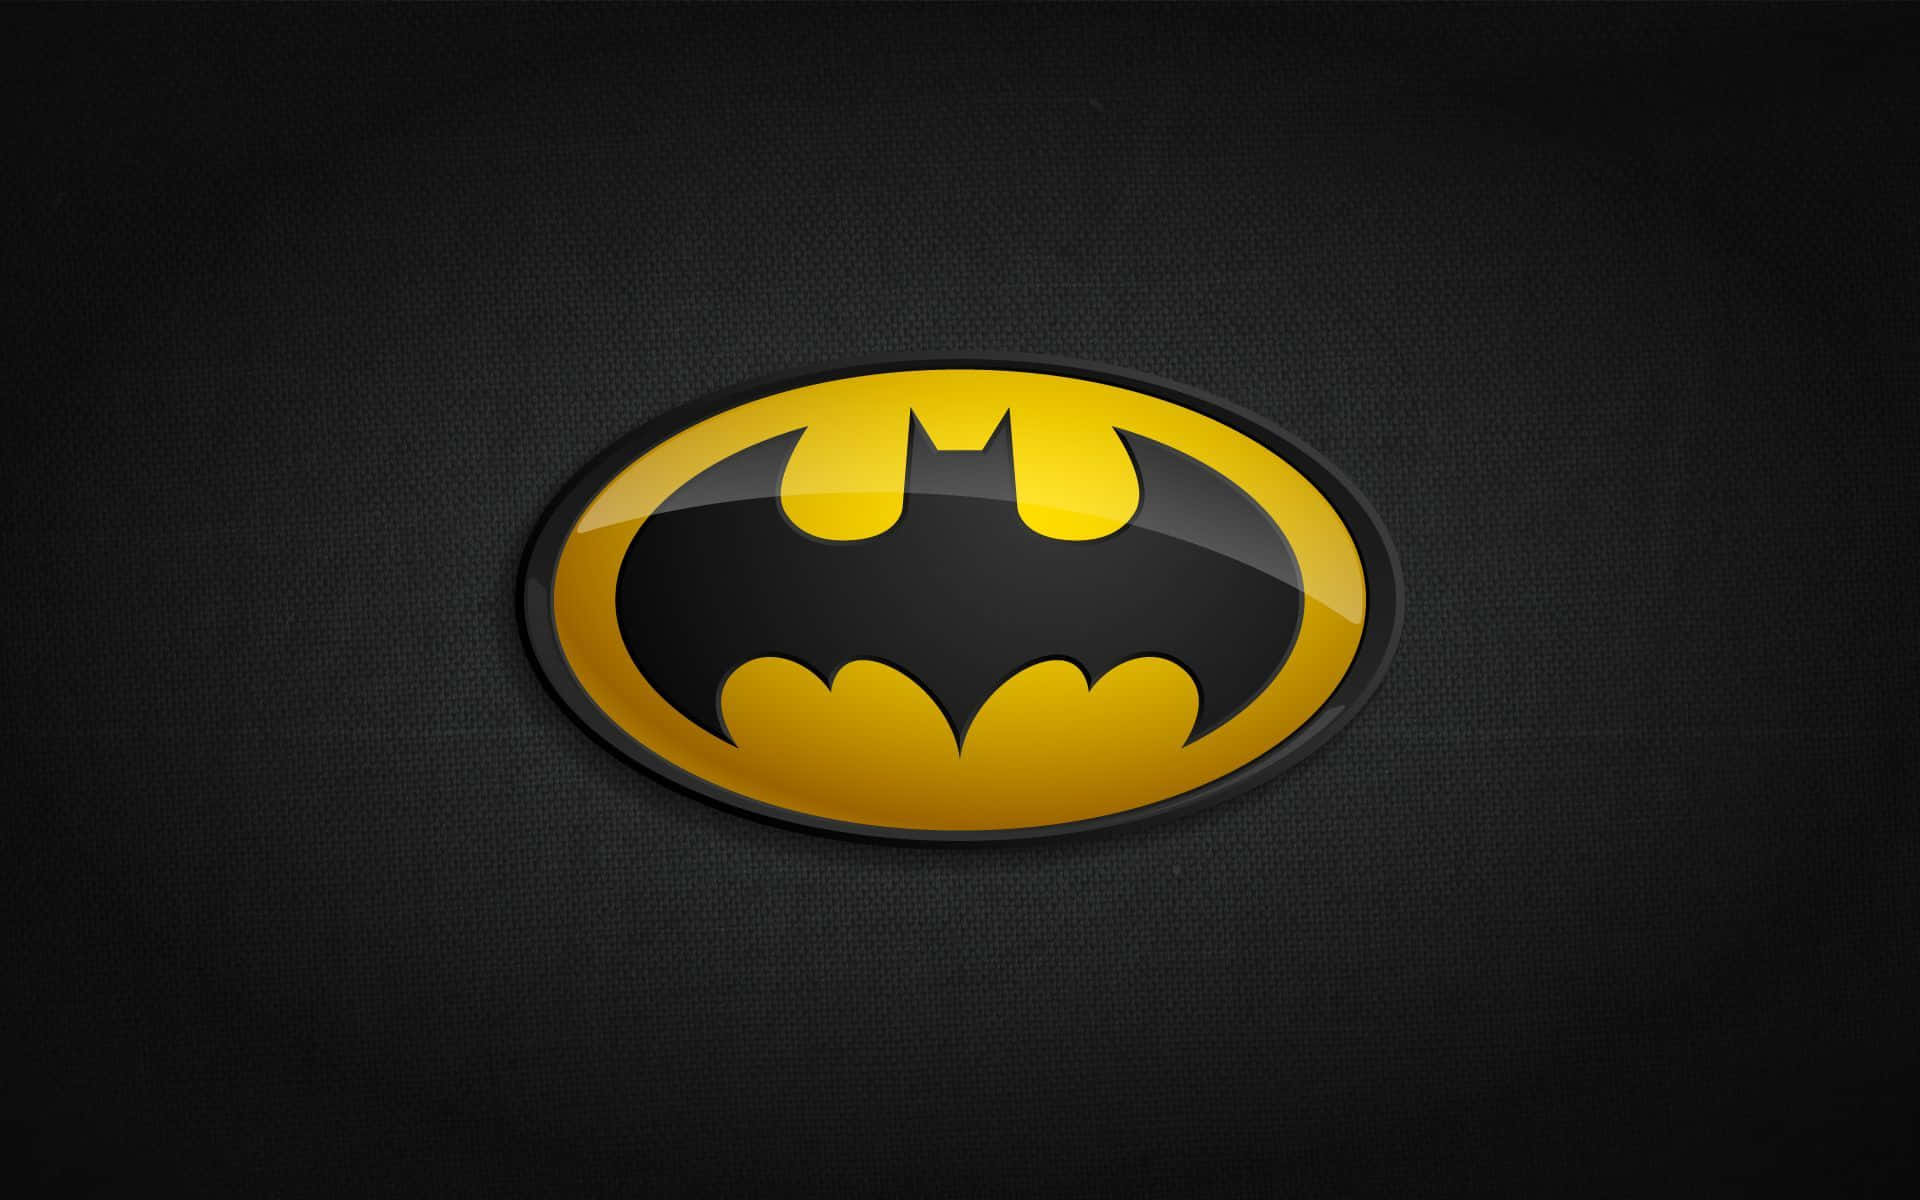 Batman with Bats & Moon Comics Wallpapers - Batman Wallpapers